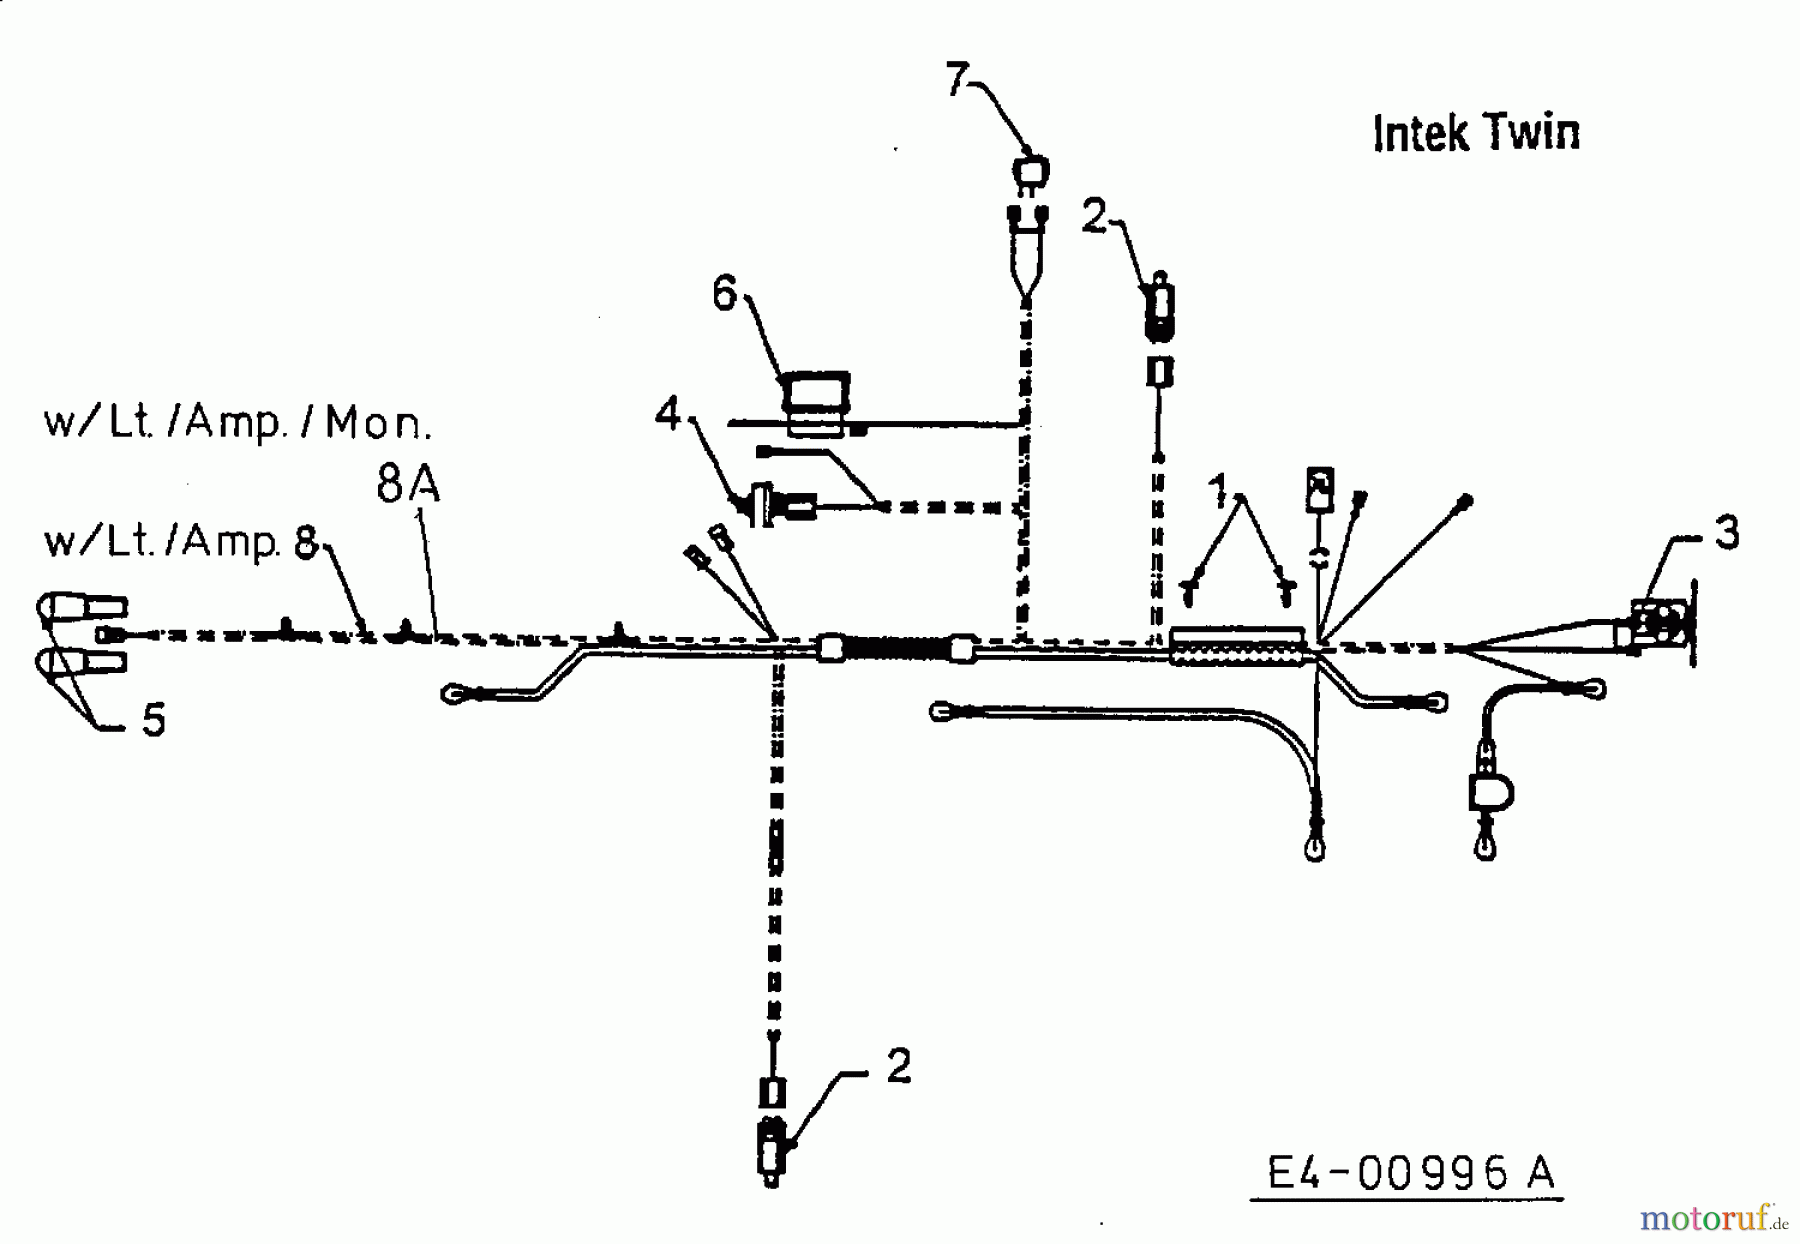  MTD Tracteurs de pelouse H 130 13AA695F678  (1998) Plan électrique  Intek Twin